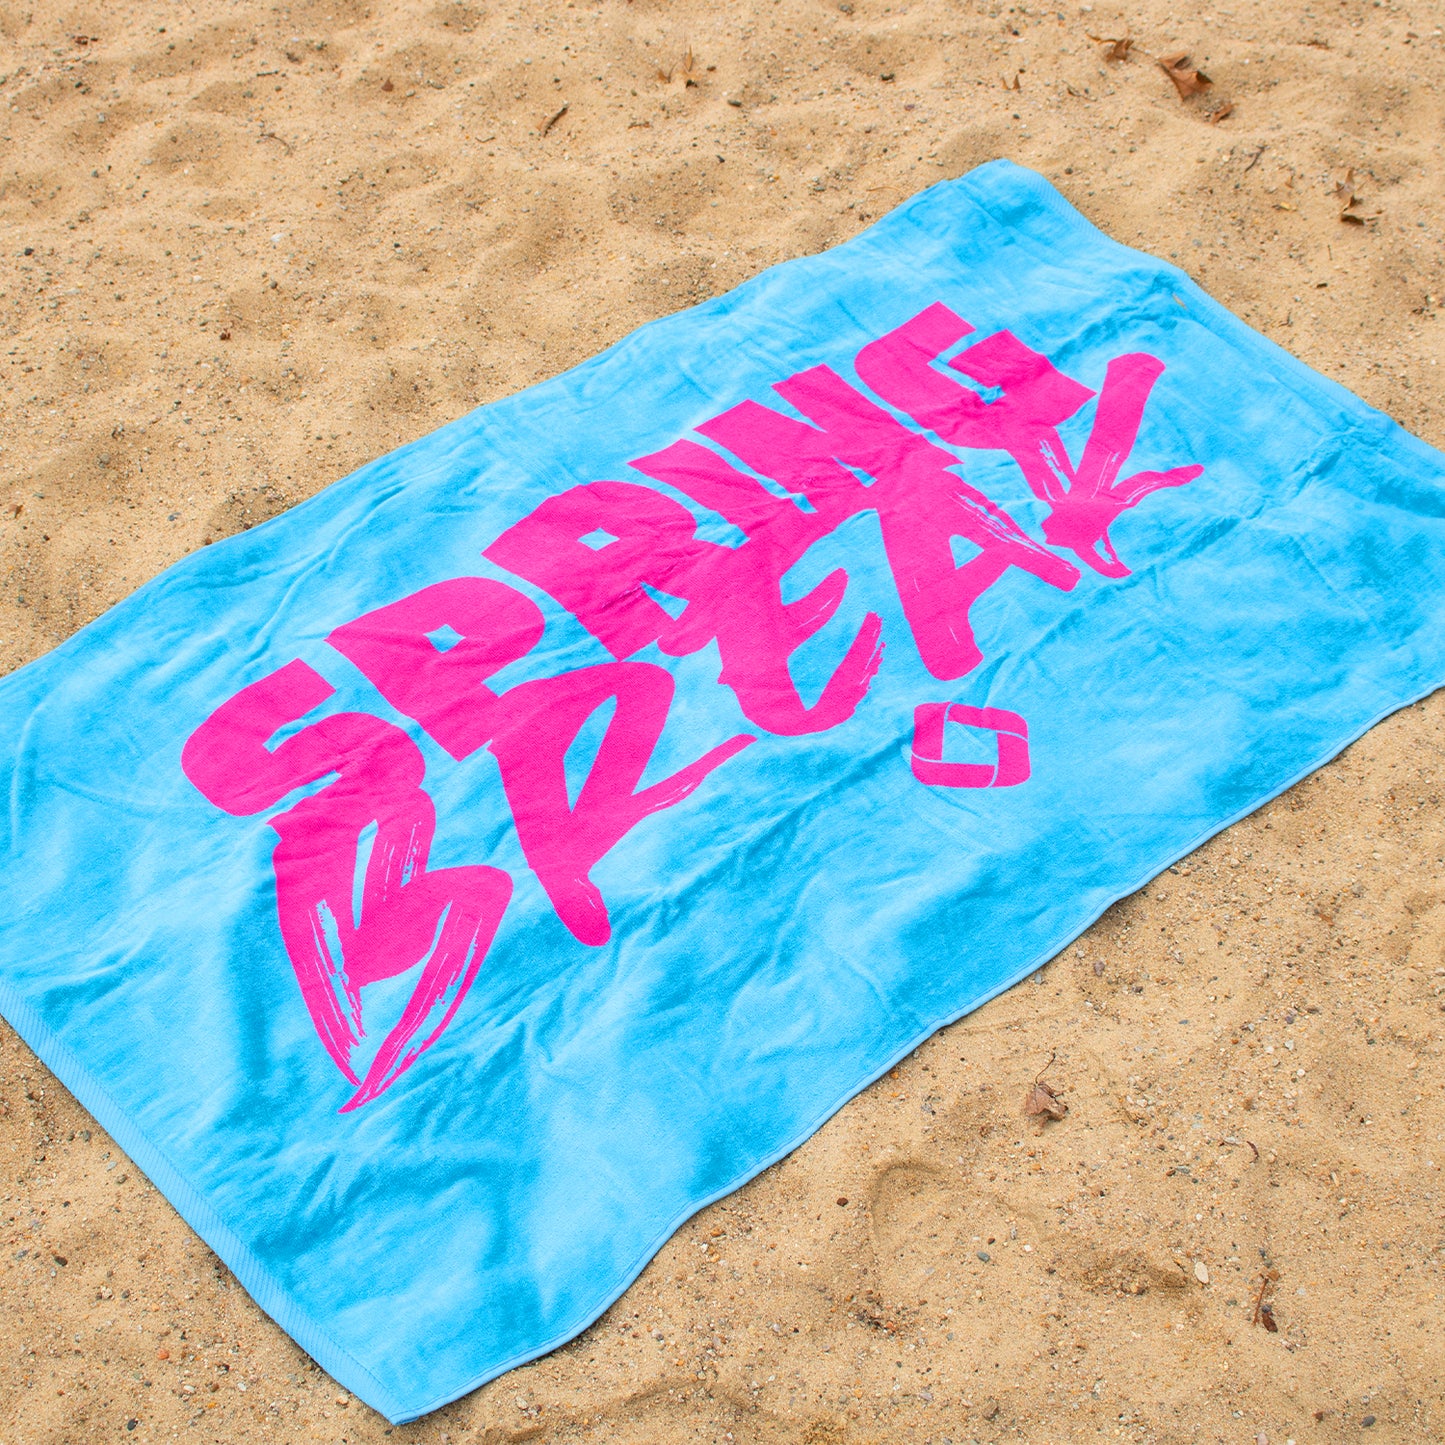 Spring Break Beach Towel